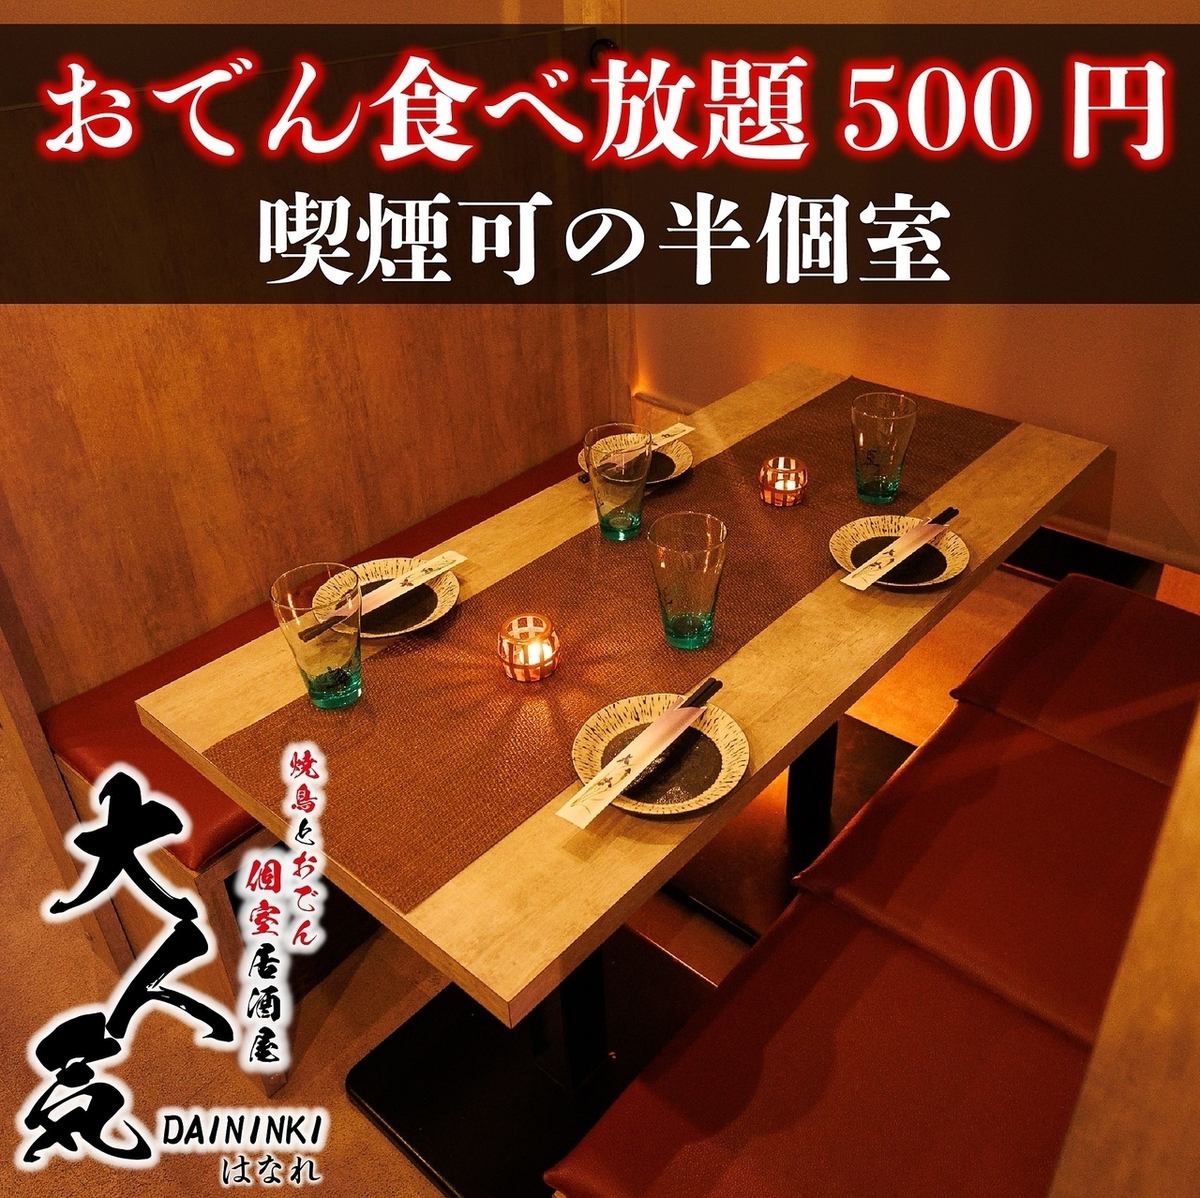 【小团体OK】包间宴会♪附无限畅饮套餐2,980日元！